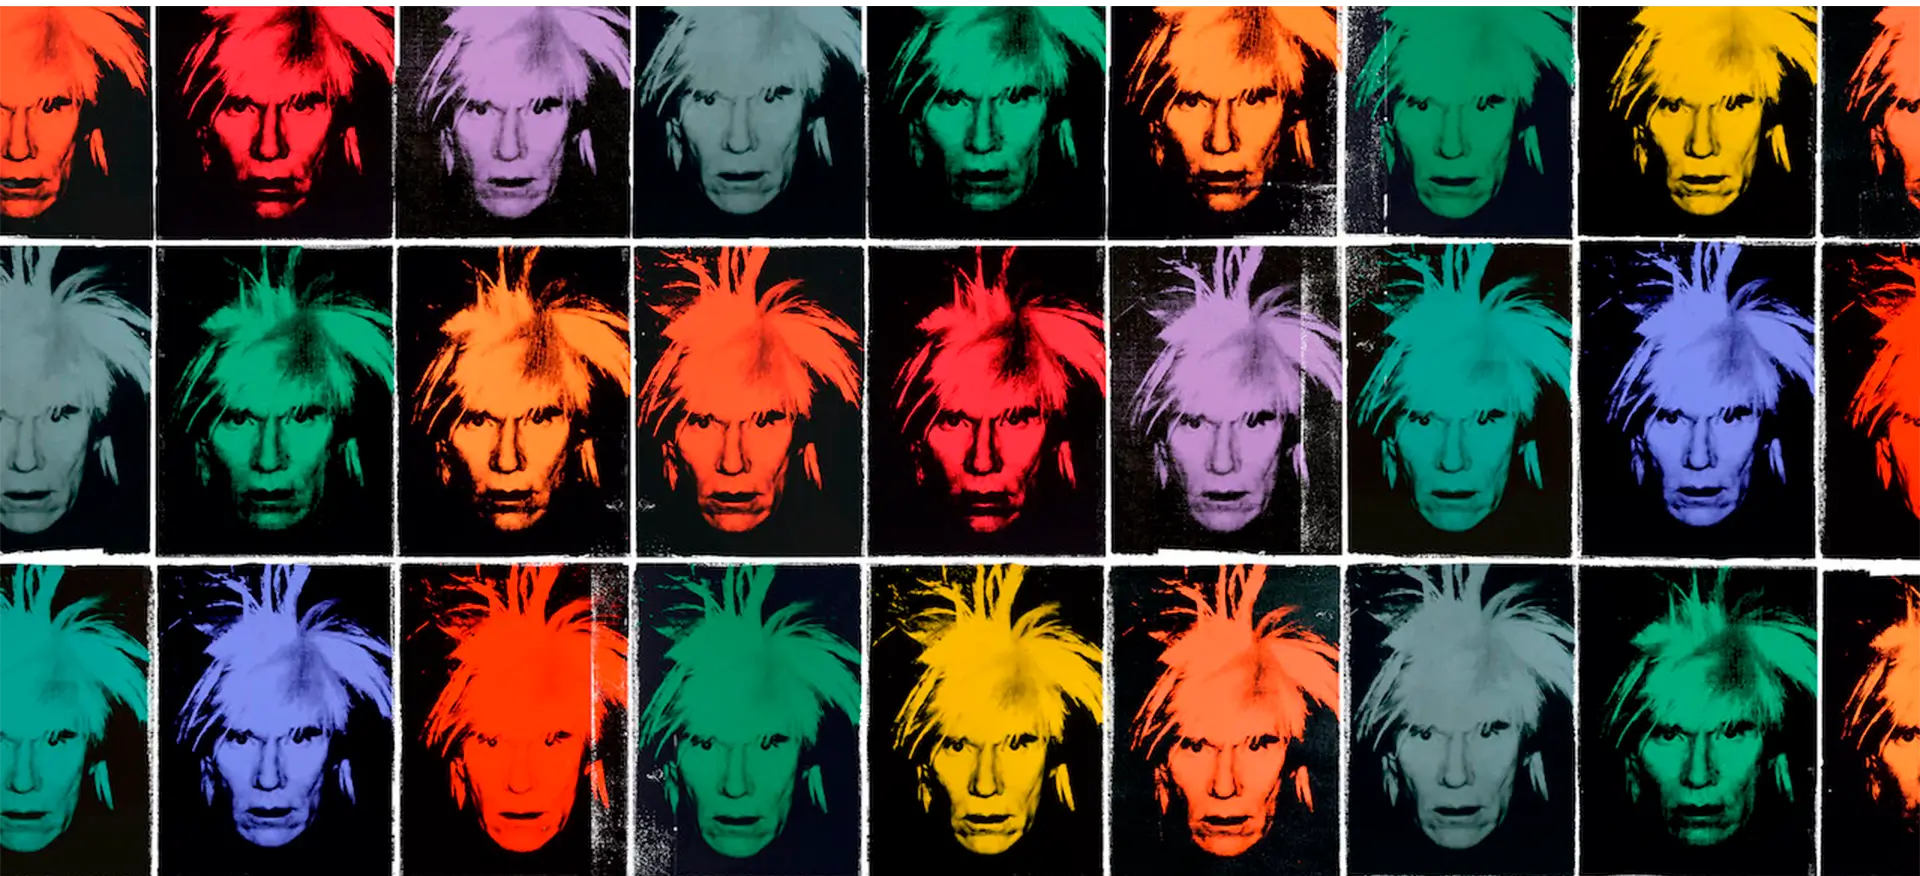 Crítica Los Diarios de Andy Warhol